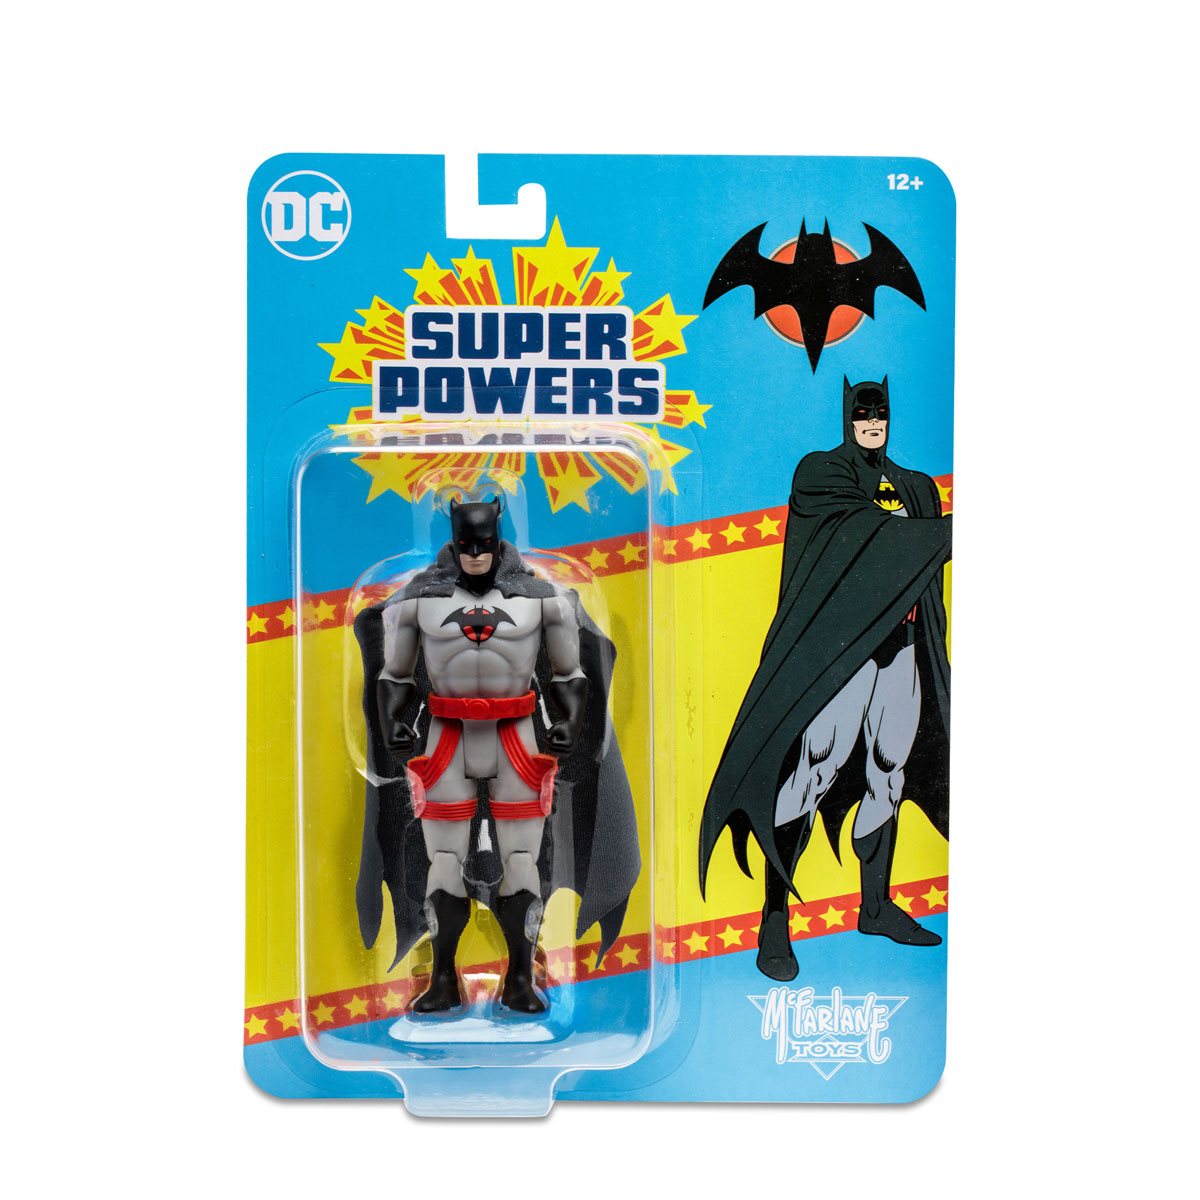 DC Super Powers Wave 5 Thomas Wayne Batman Flashpoint 4-Inch Scale Action Figure